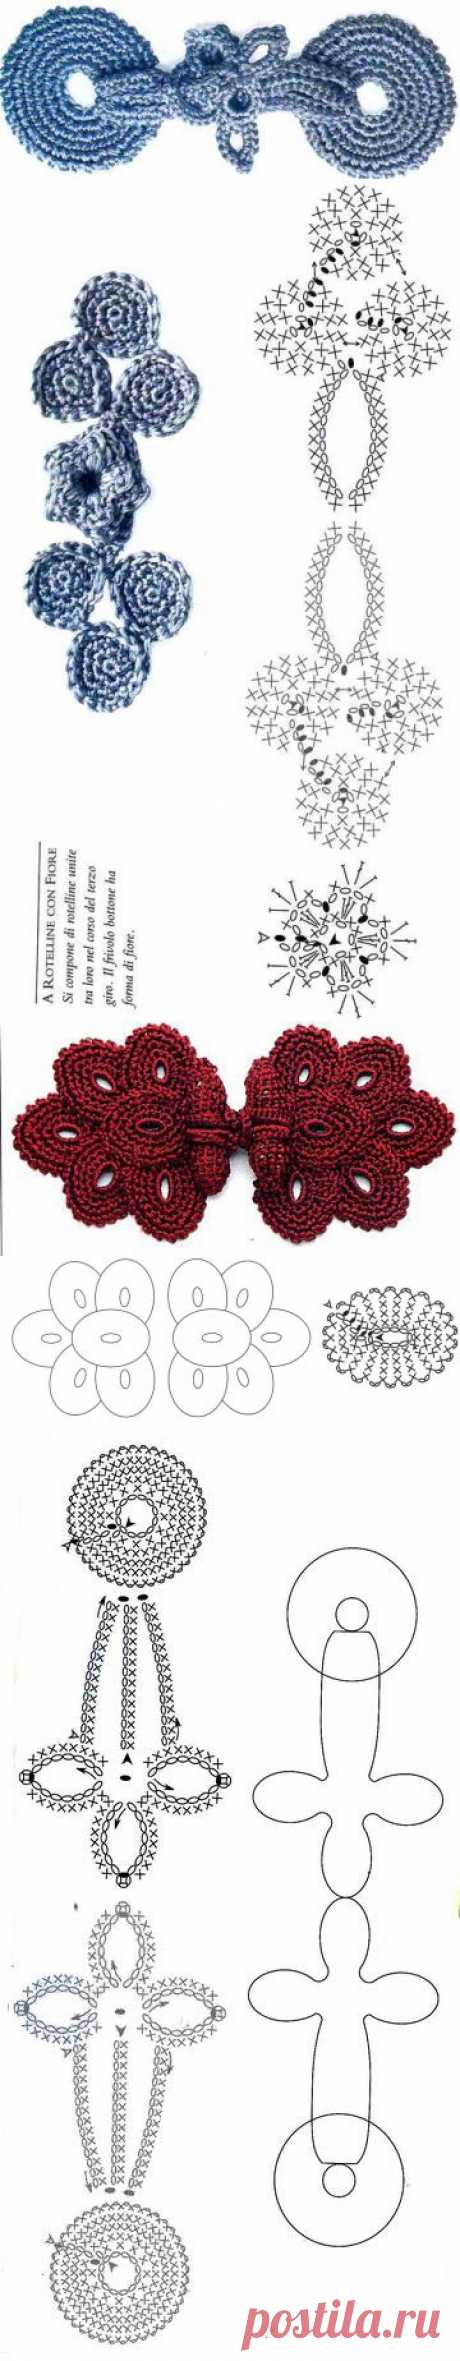 crochet art buttons - crafts ideas - crafts for kids